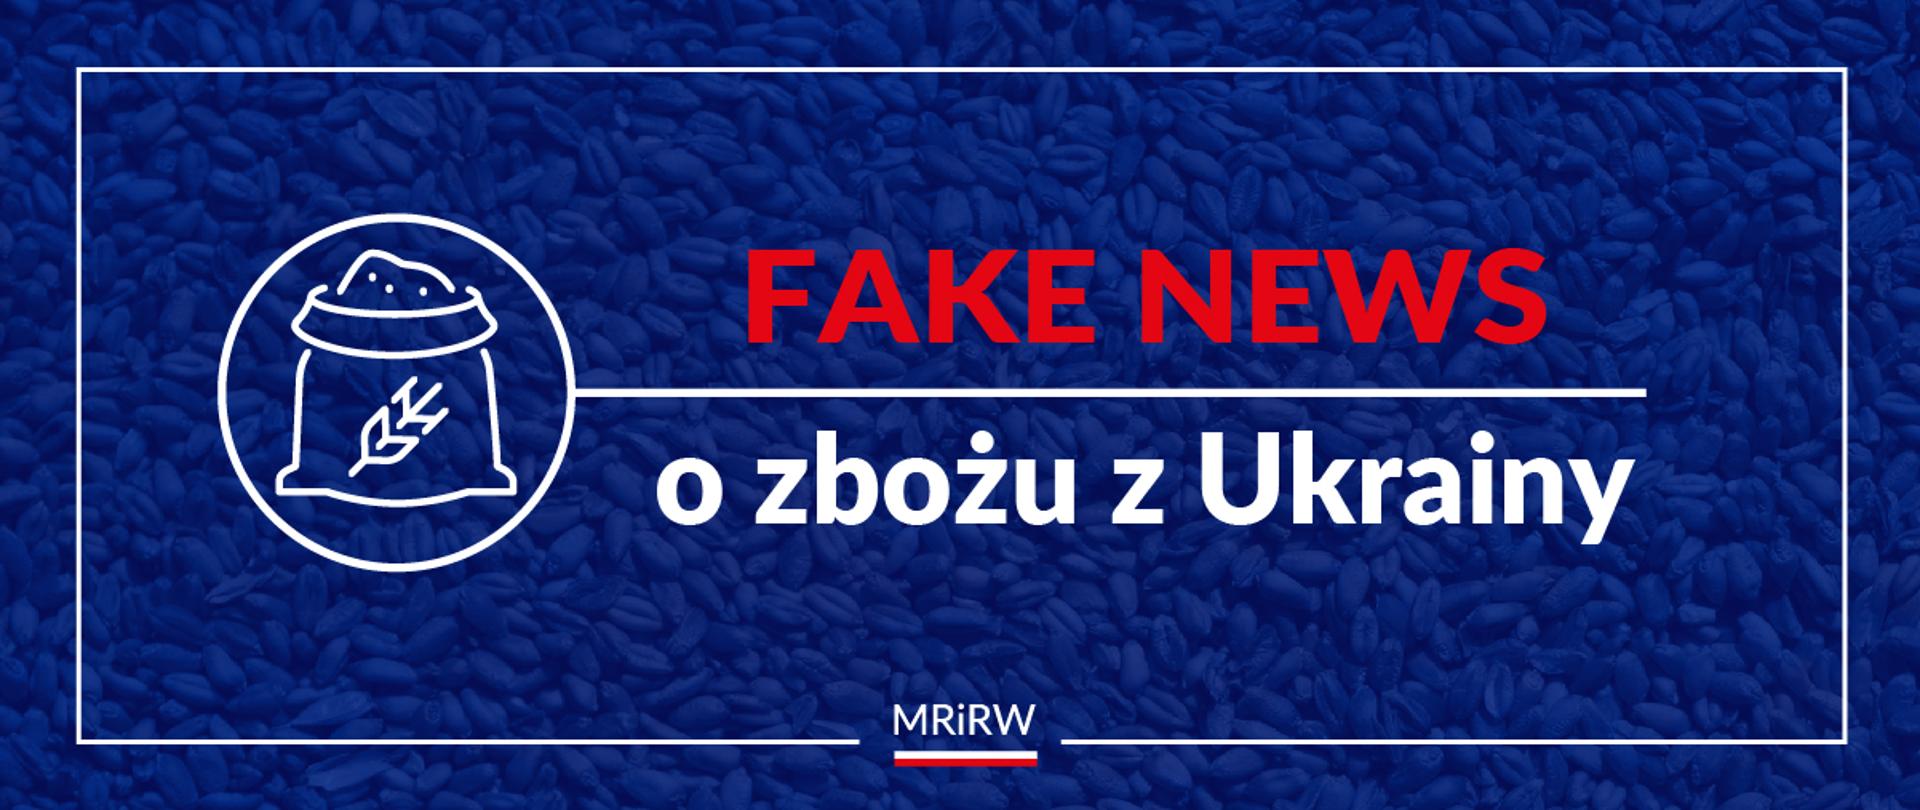 Fake news o zbożu z Ukrainy